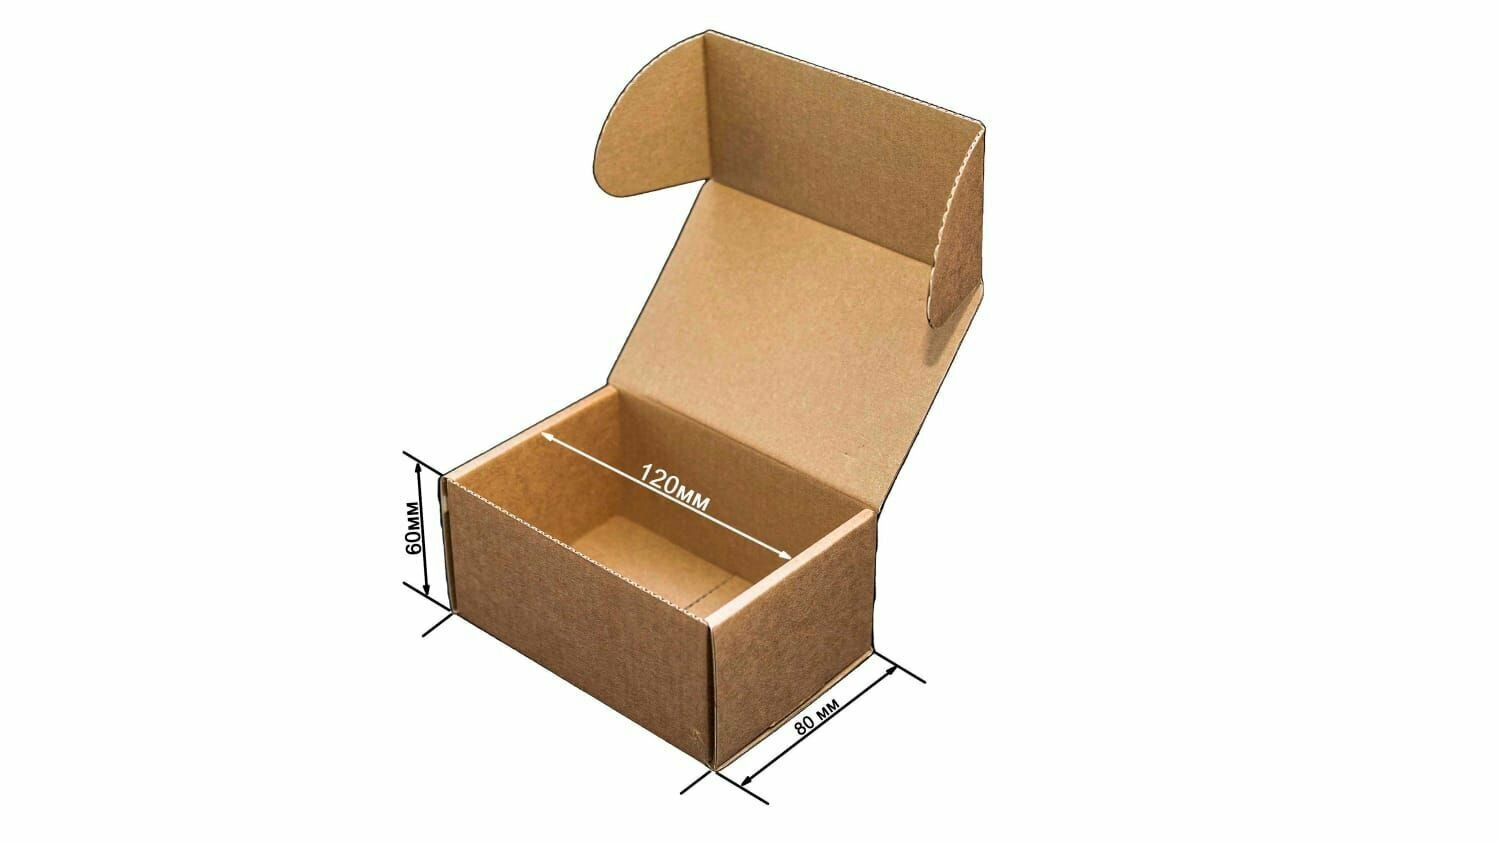 Картонная коробка для подарка и хранения вещей 120х60х80 мм, самосборная картонная подарочная, в упаковке 100 шт.